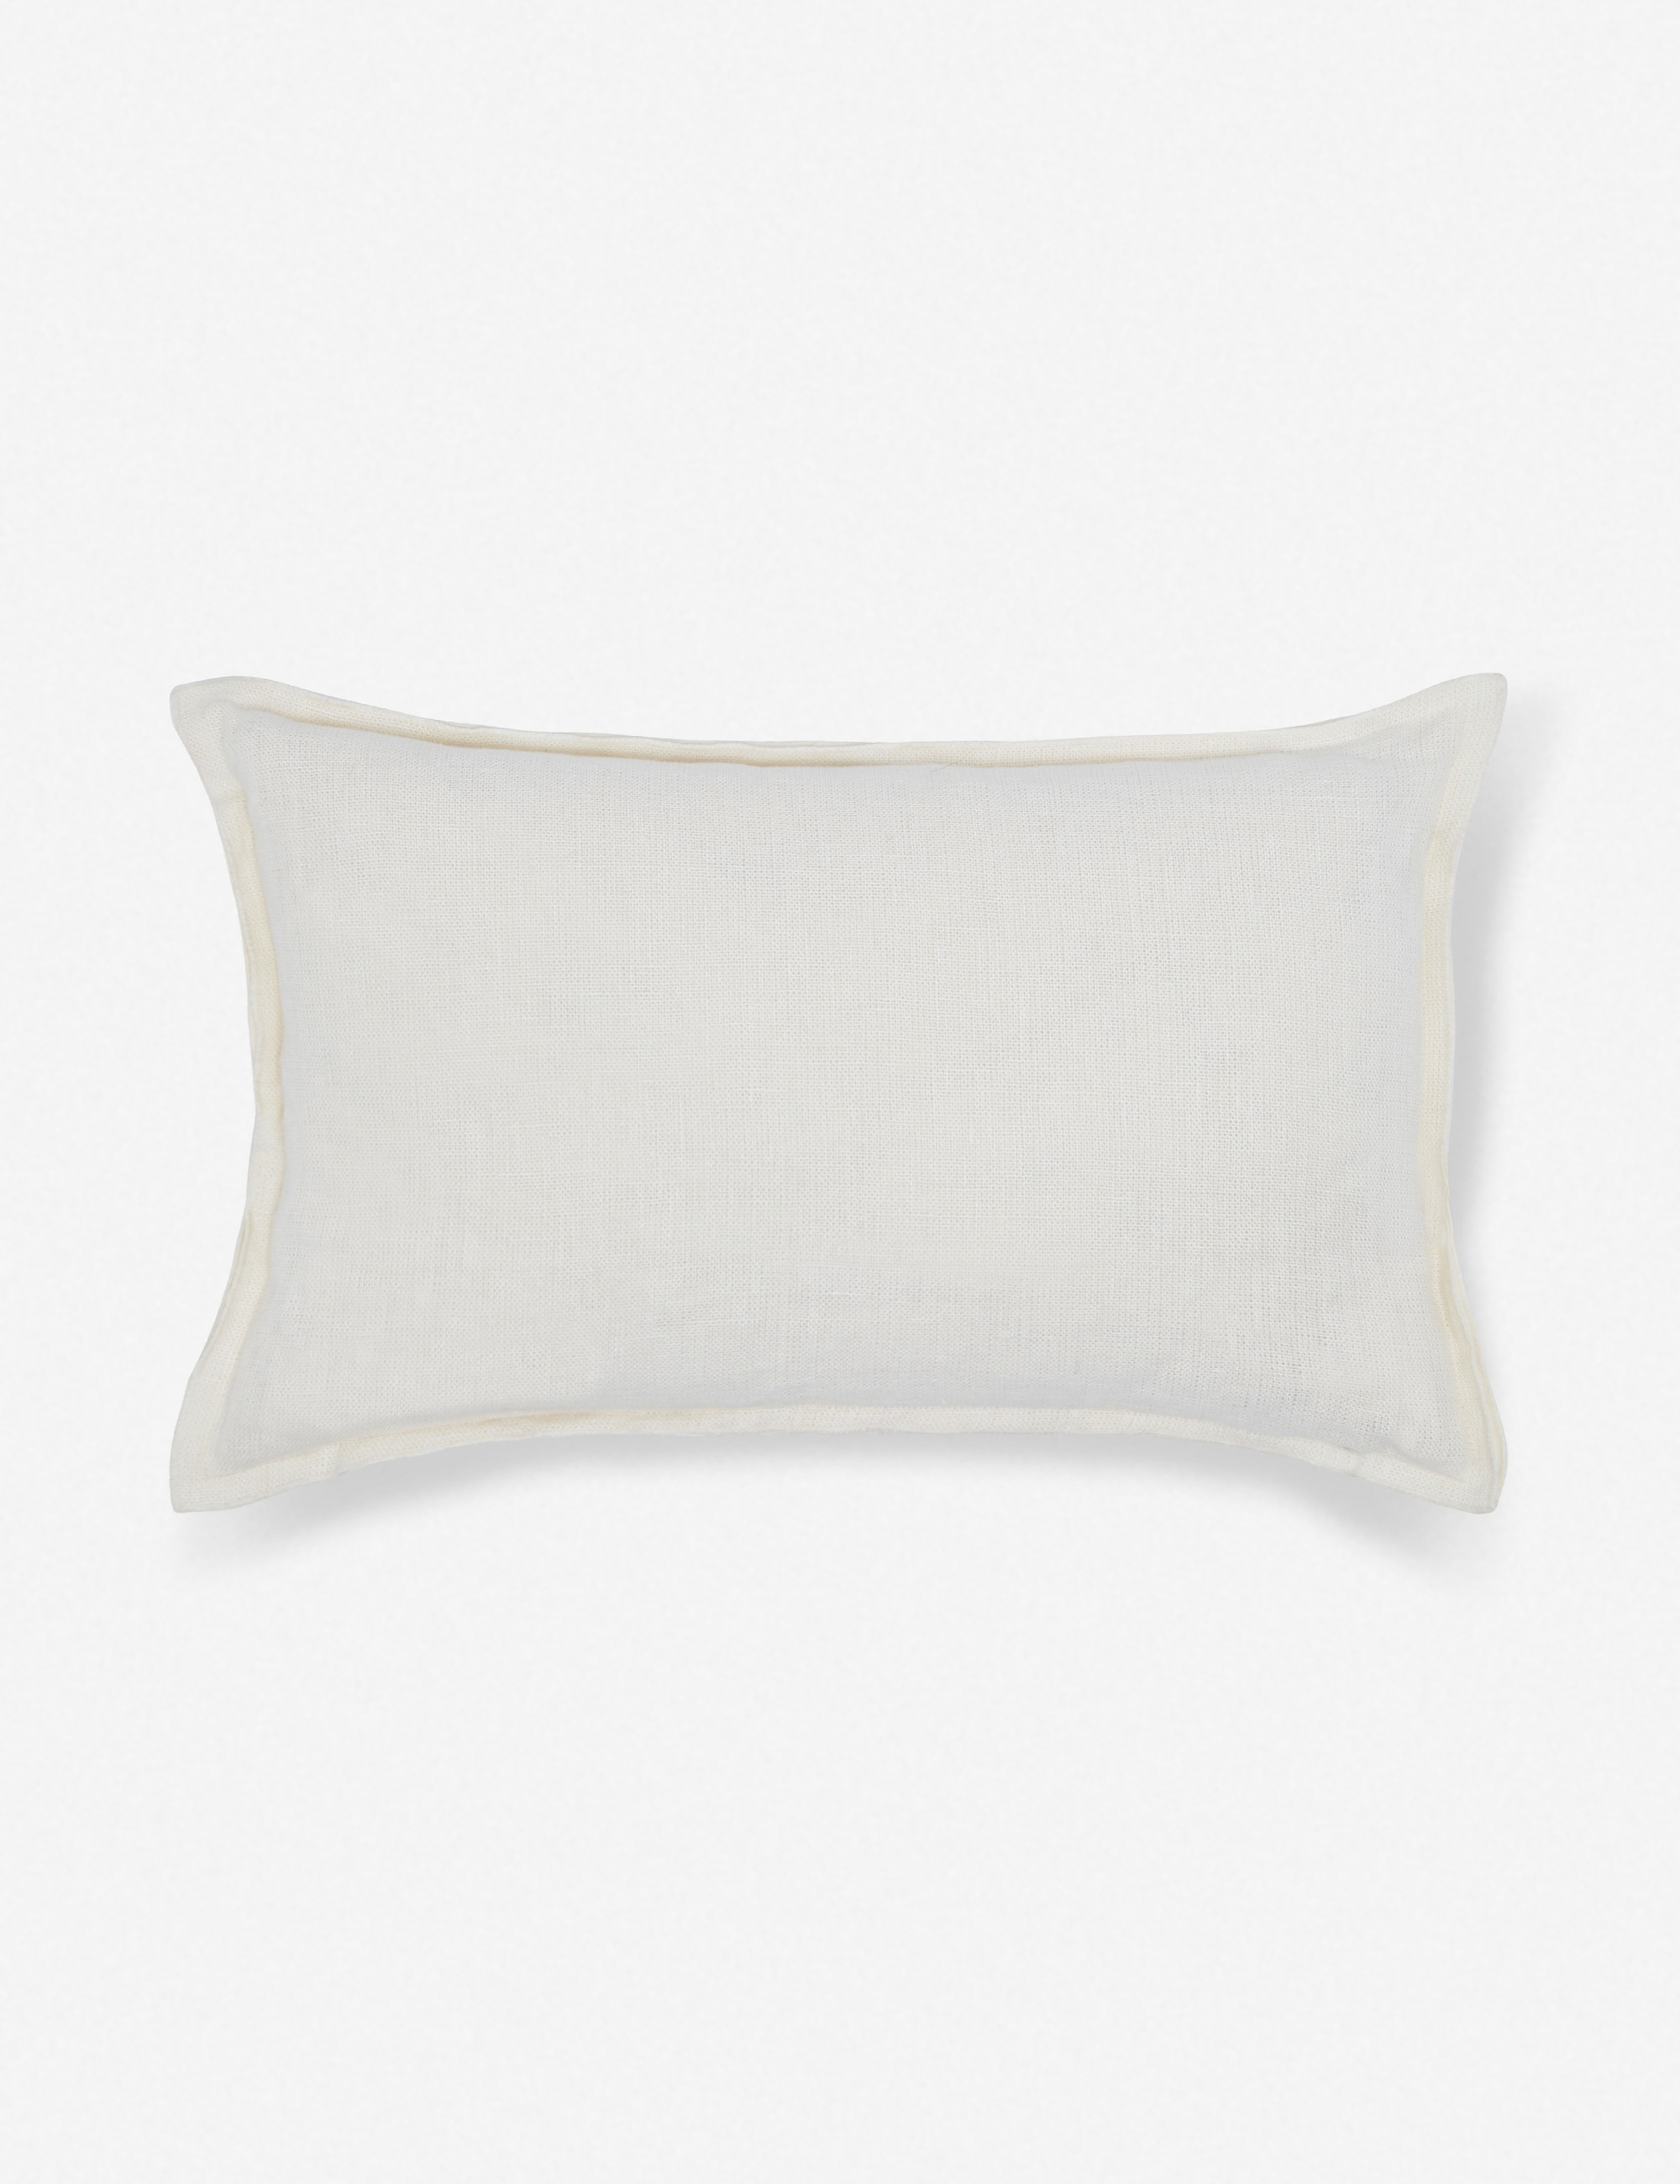 Arlo Linen Lumbar Pillow, Ivory - Lulu and Georgia